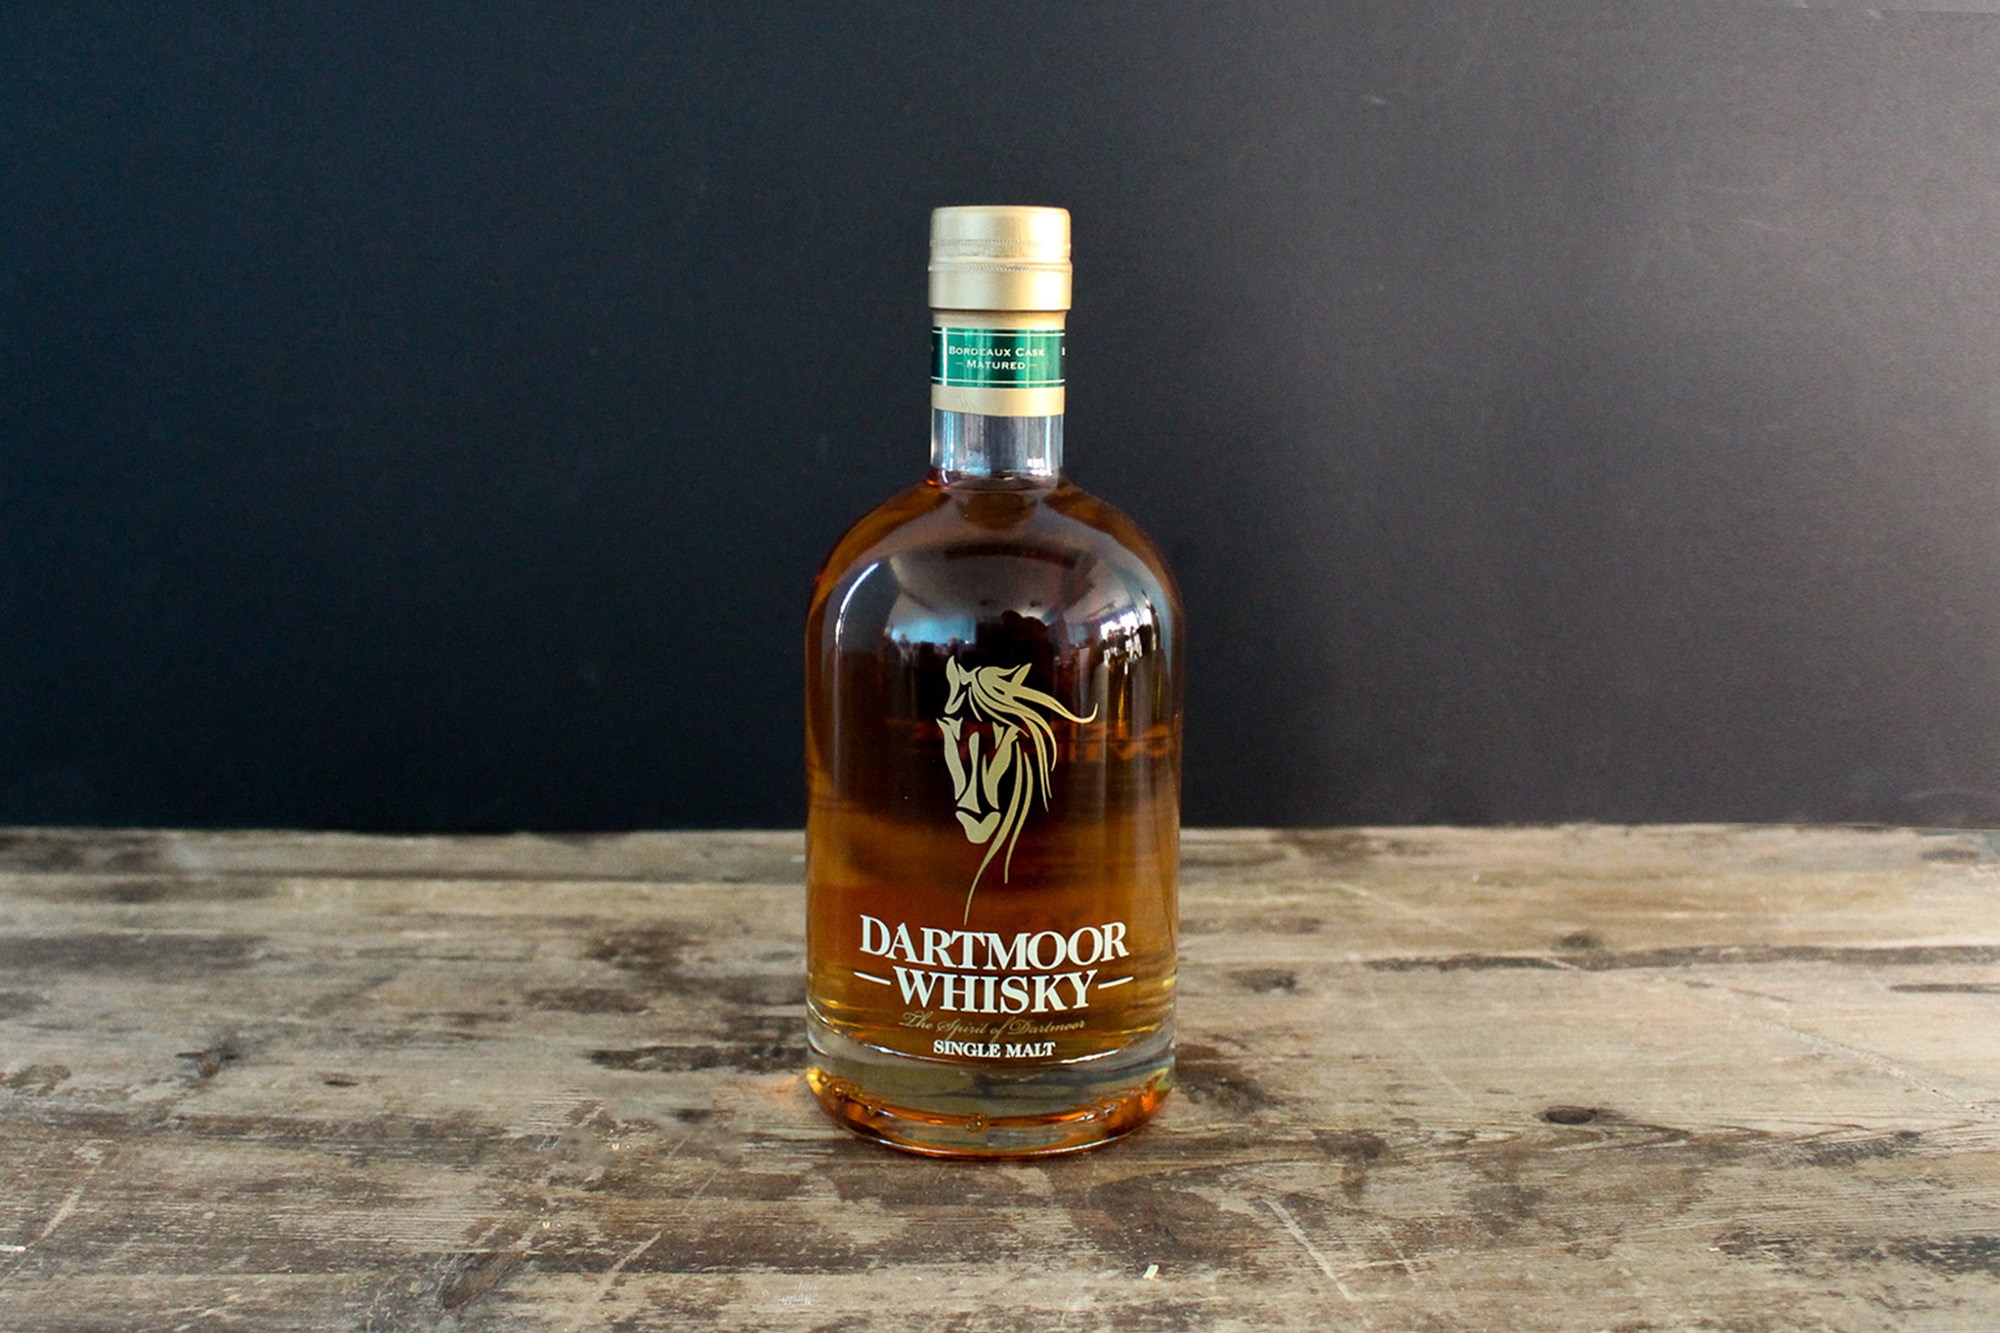 Dartmoor Whisky - Bourdeaux Cask Matured